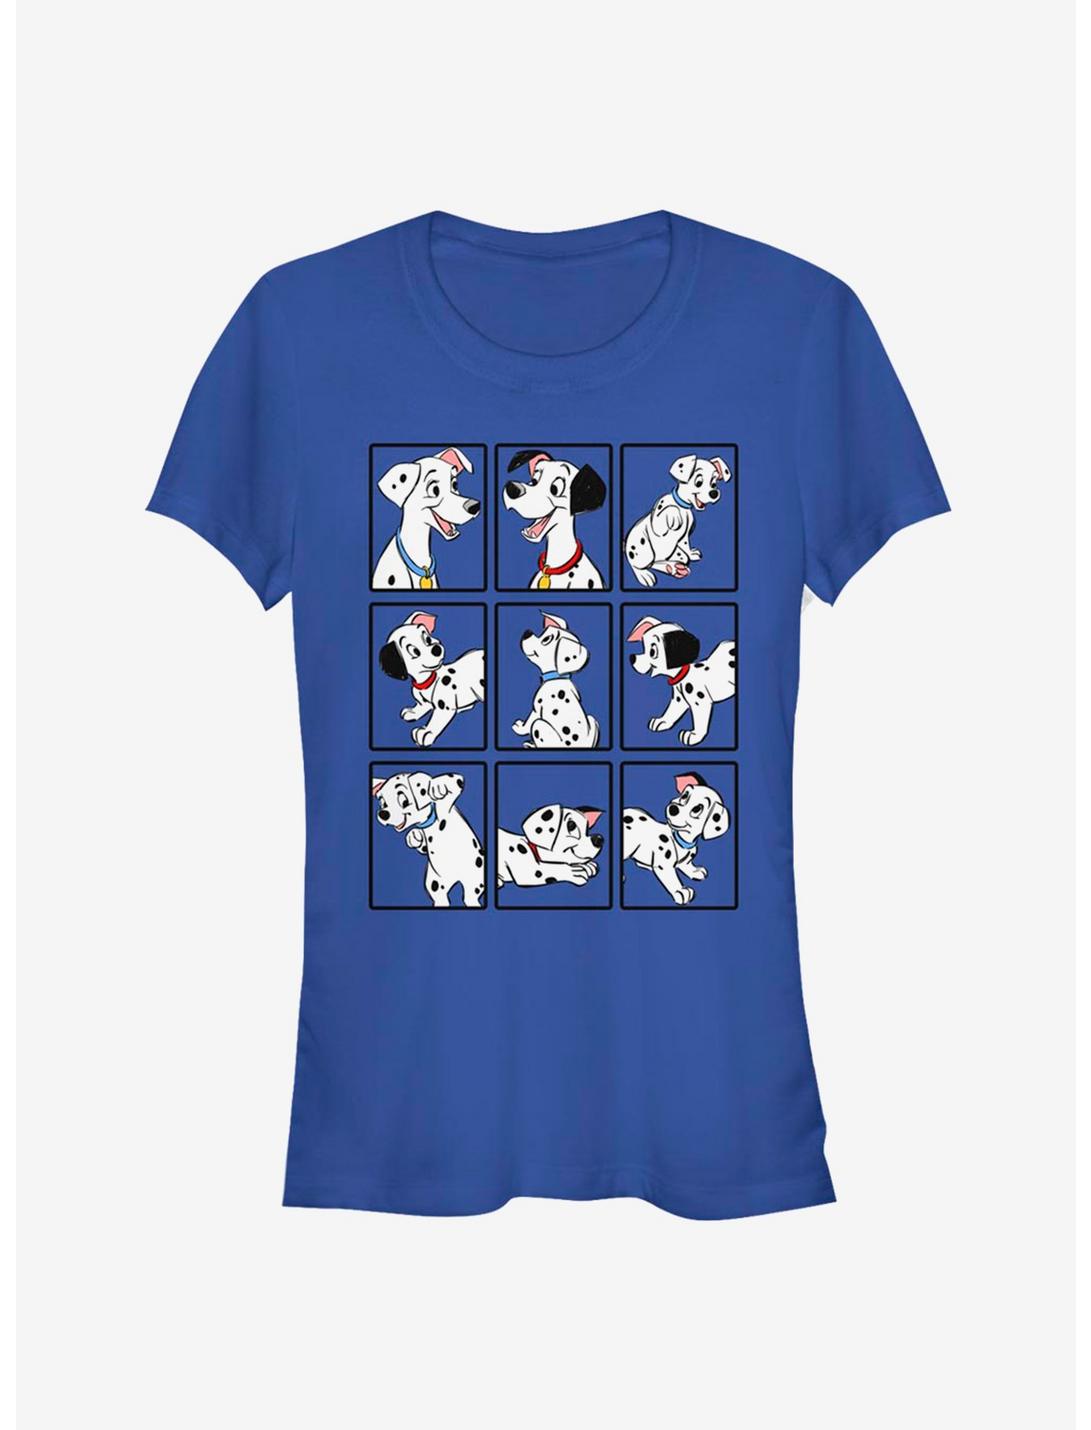 Disney 101 Dalmatians Characters Classic Girls T-Shirt, , hi-res